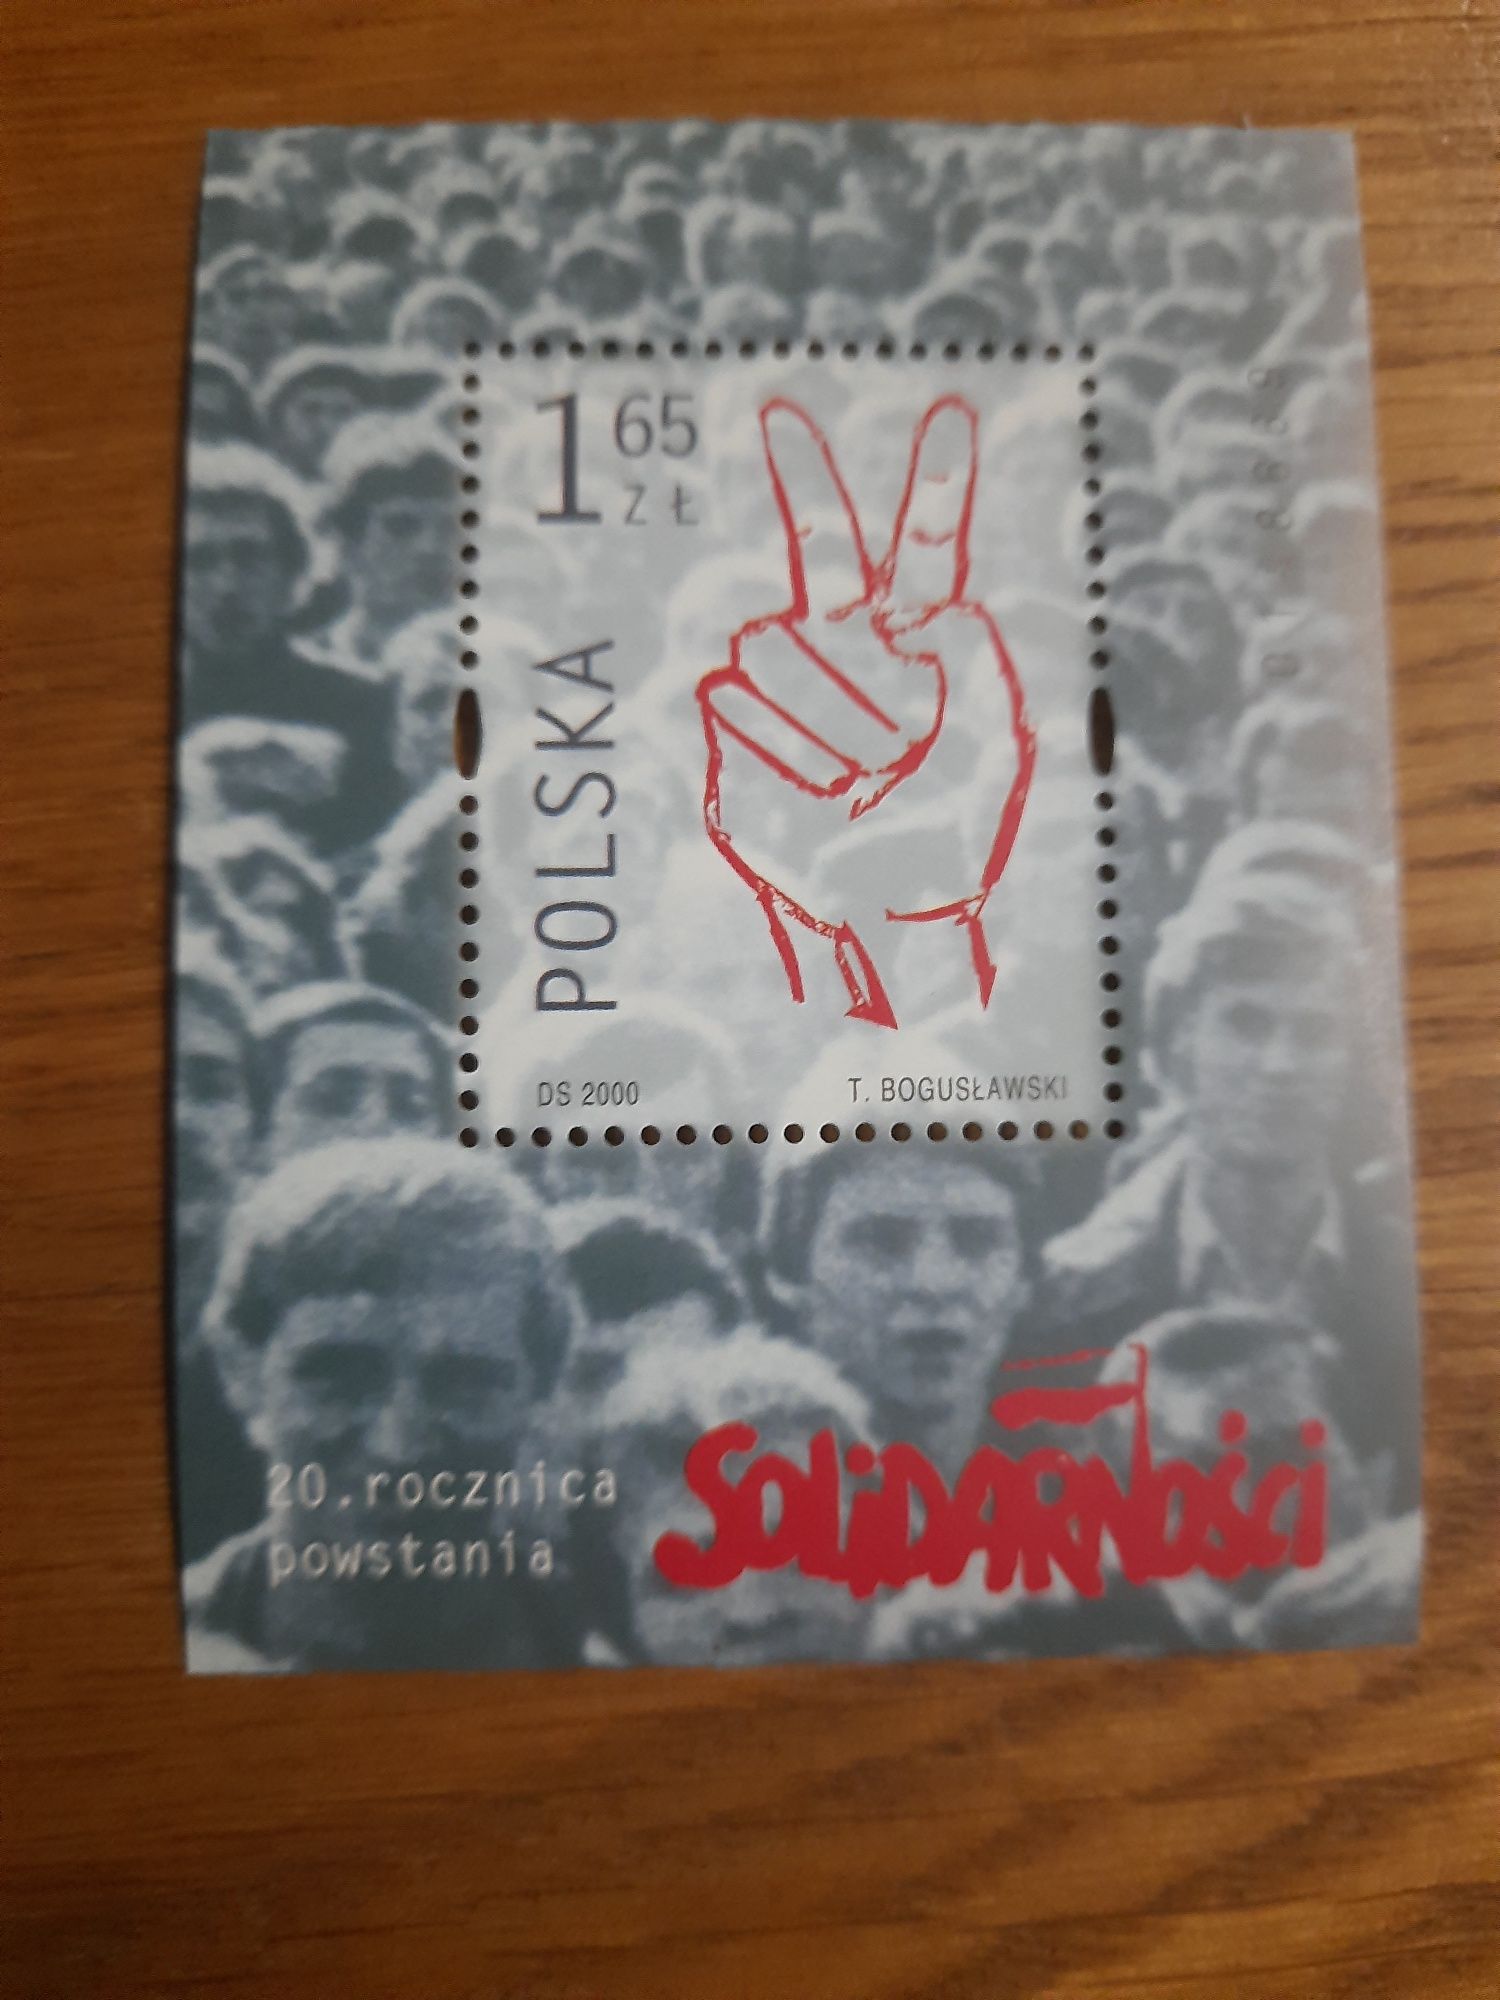 Znaczek pocztowy 20sta rocznica powstania solidarnościi